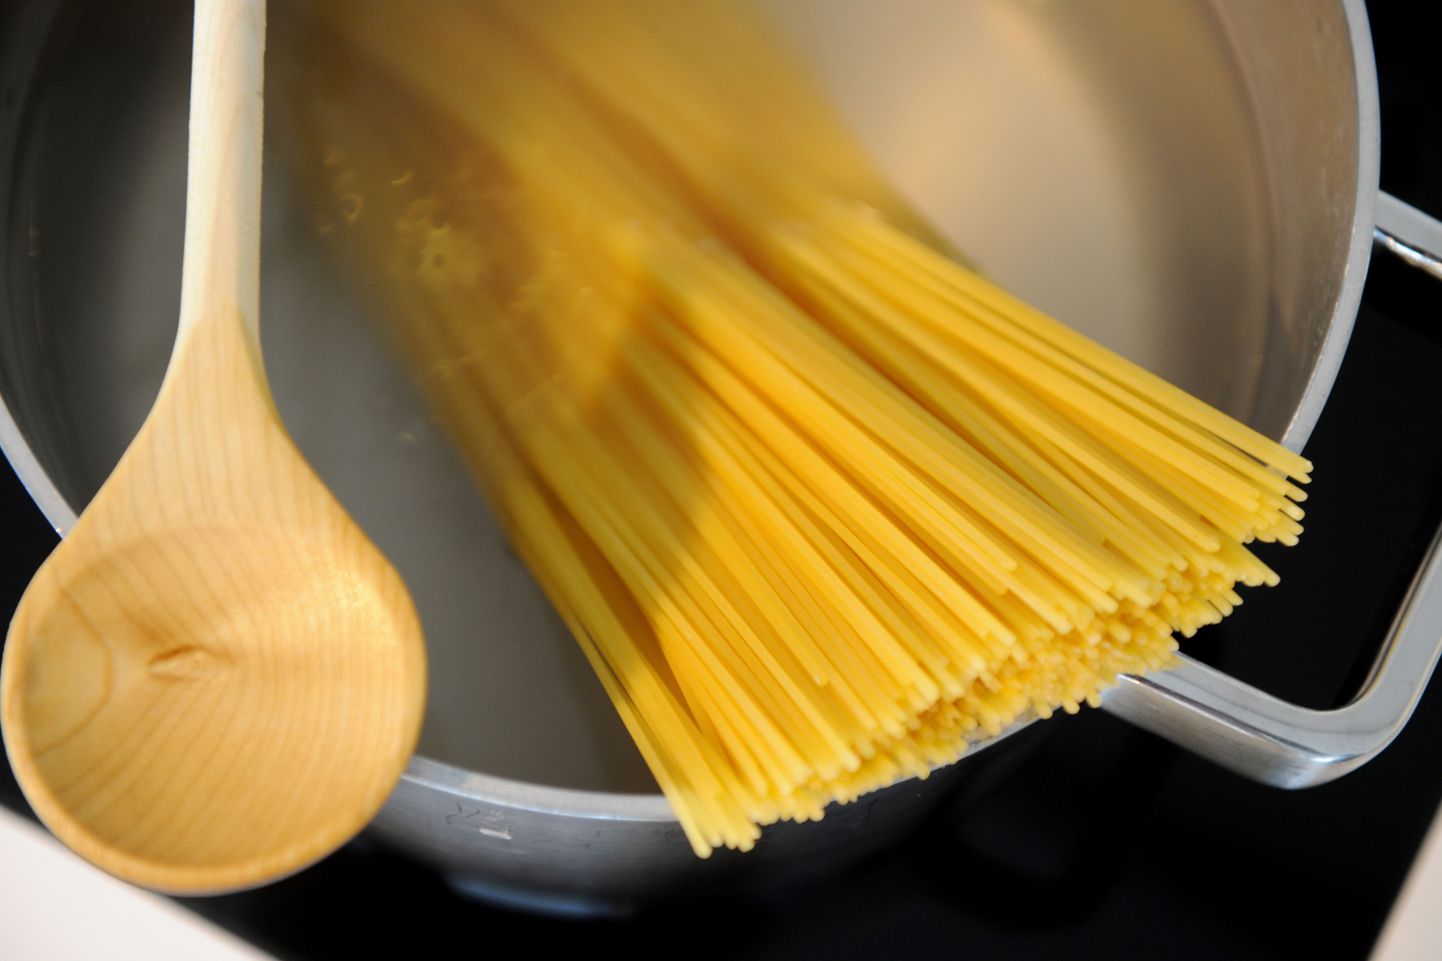 Ülejäänud spagettidest saab lihtsa vaevaga teha näiteks spagetikooke.